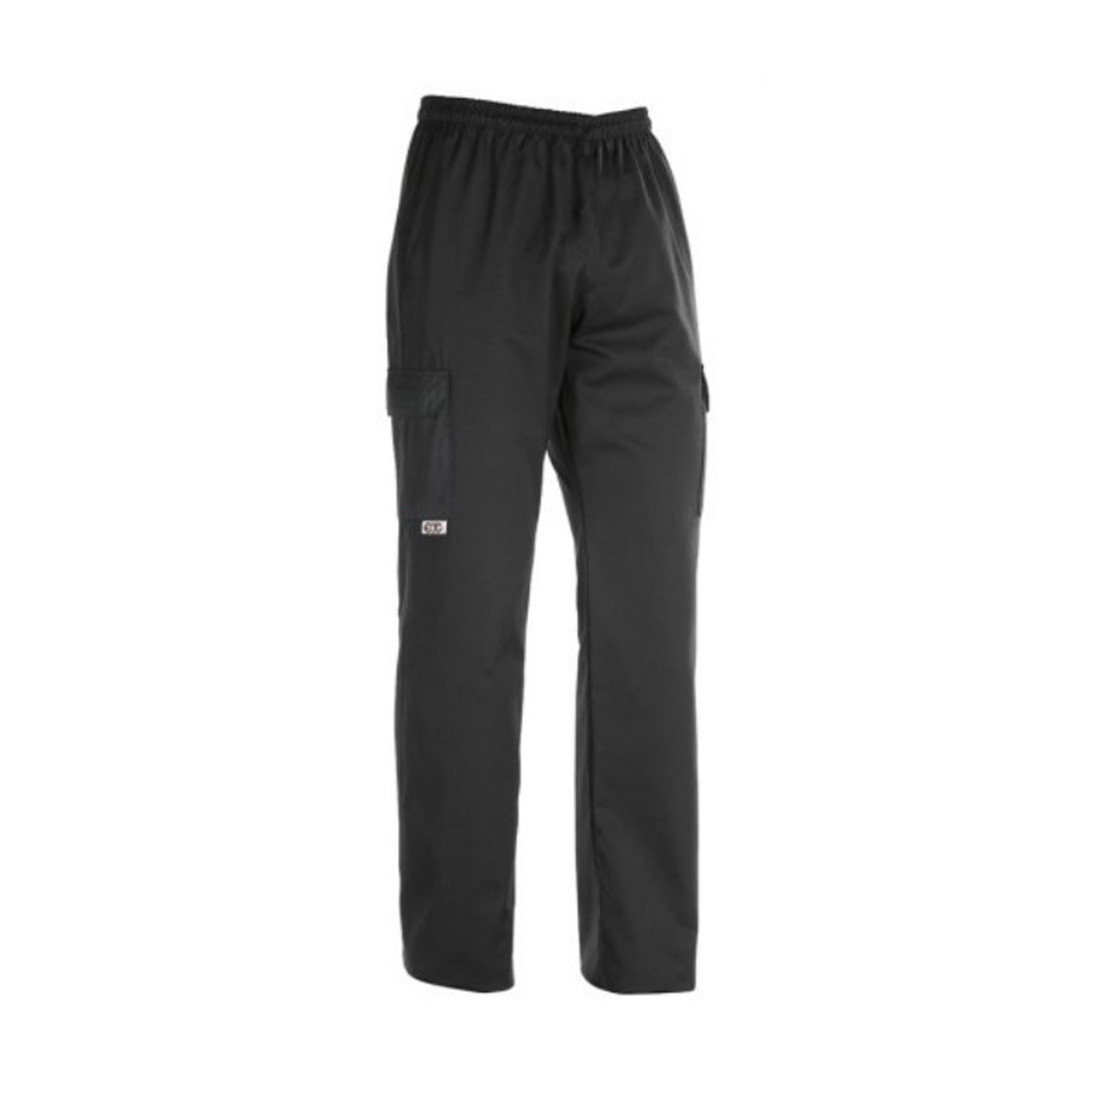 Pantaloni Coulisse Leg Pocket, 65% poliestere/35% cotone - Abbigliamento di protezione